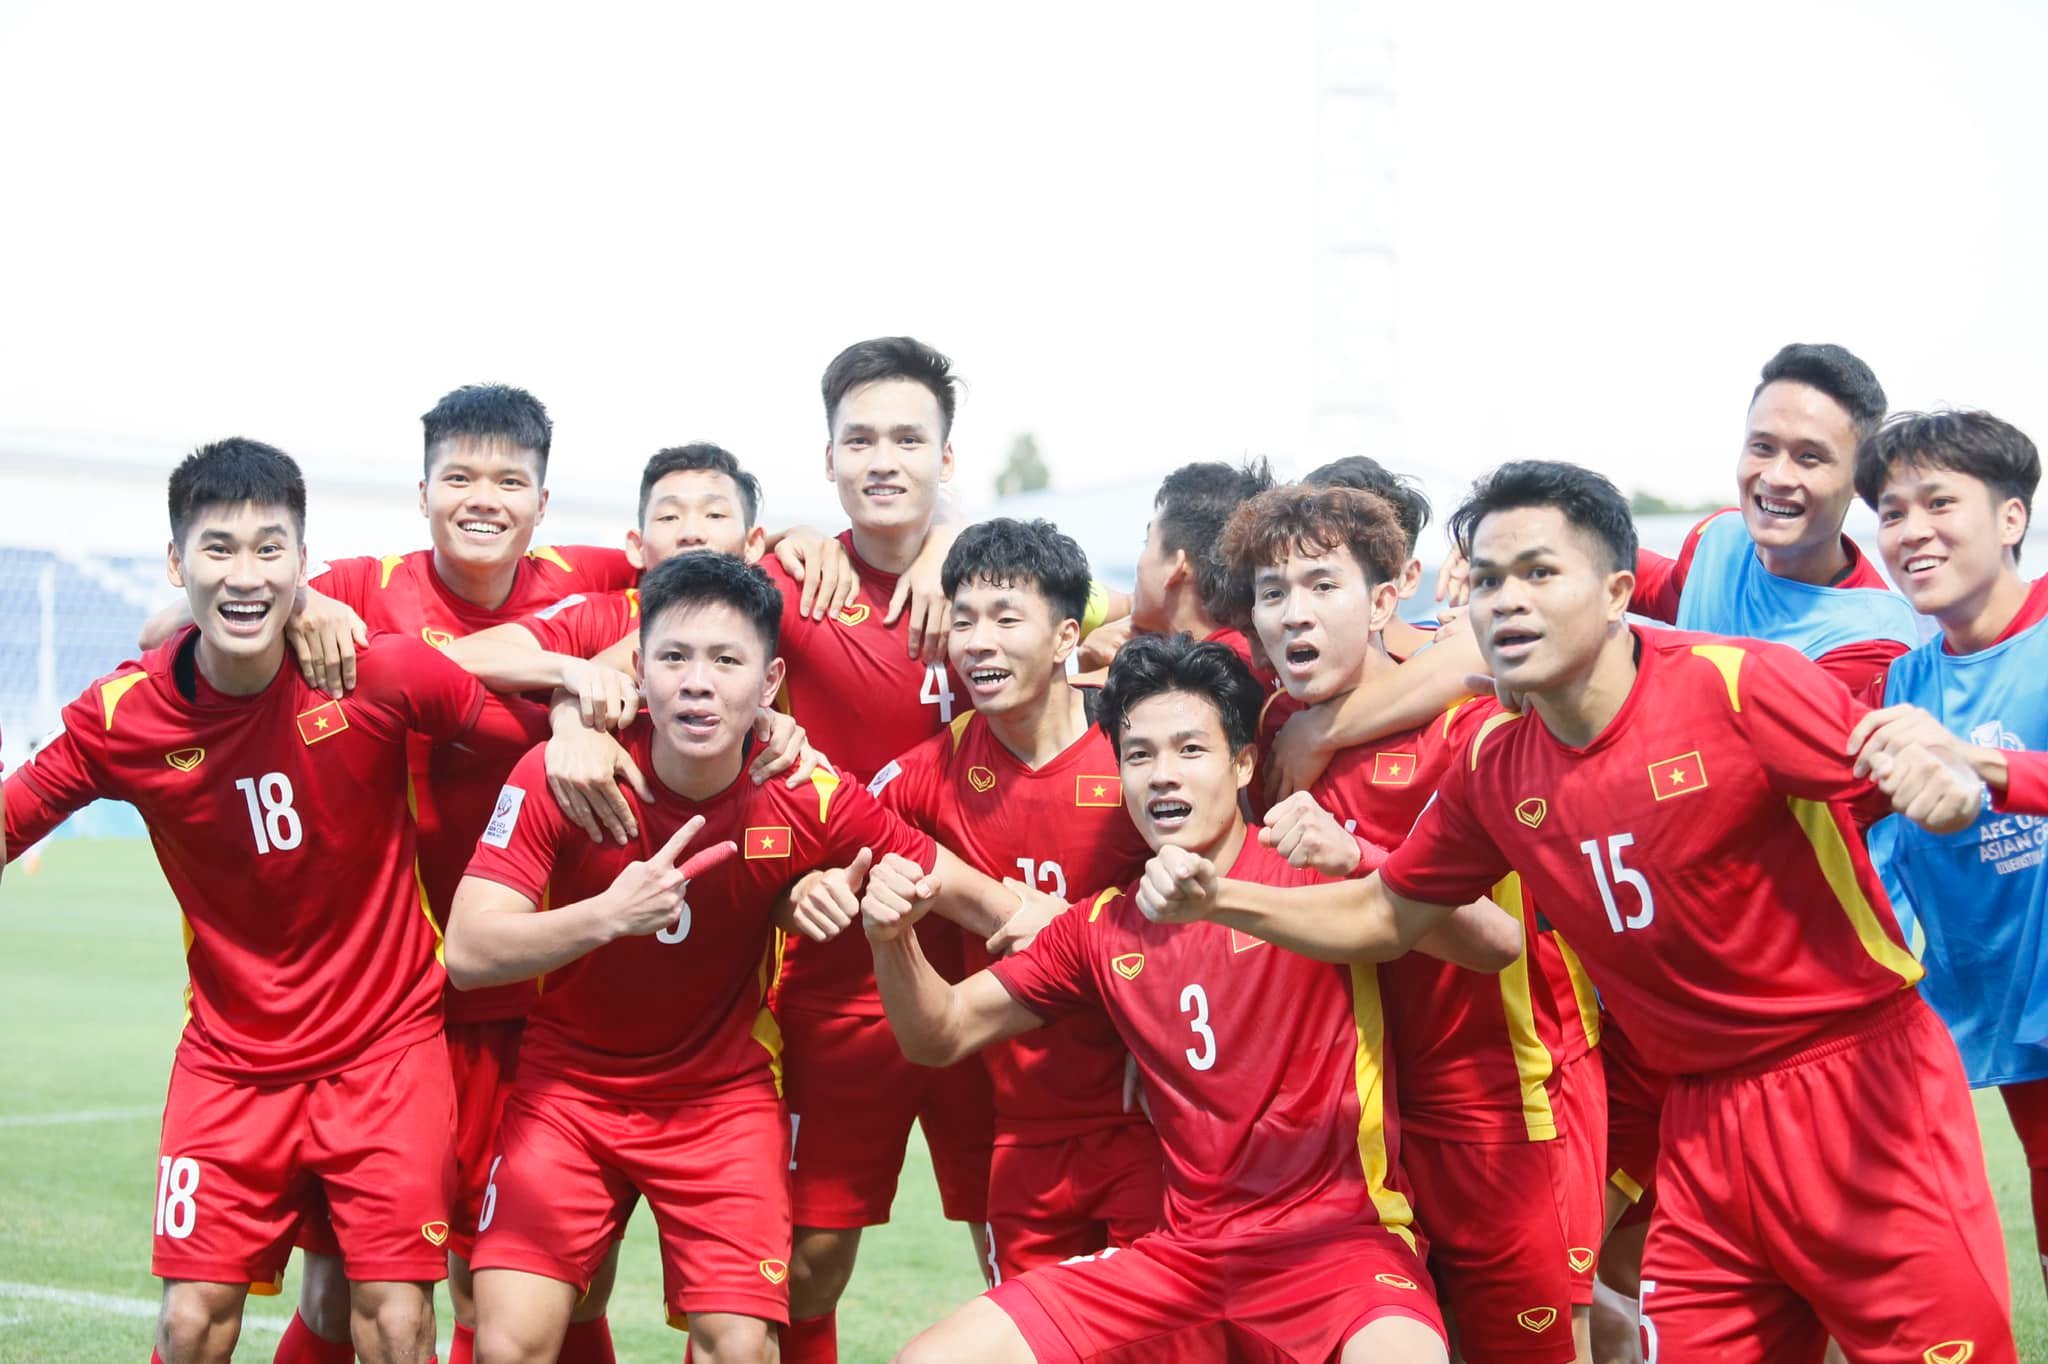 Những hình ảnh U23 Việt Nam khắc vào tim người hâm mộ bóng đá nước nhà   Đài Phát Thanh và Truyền Hình Lạng Sơn